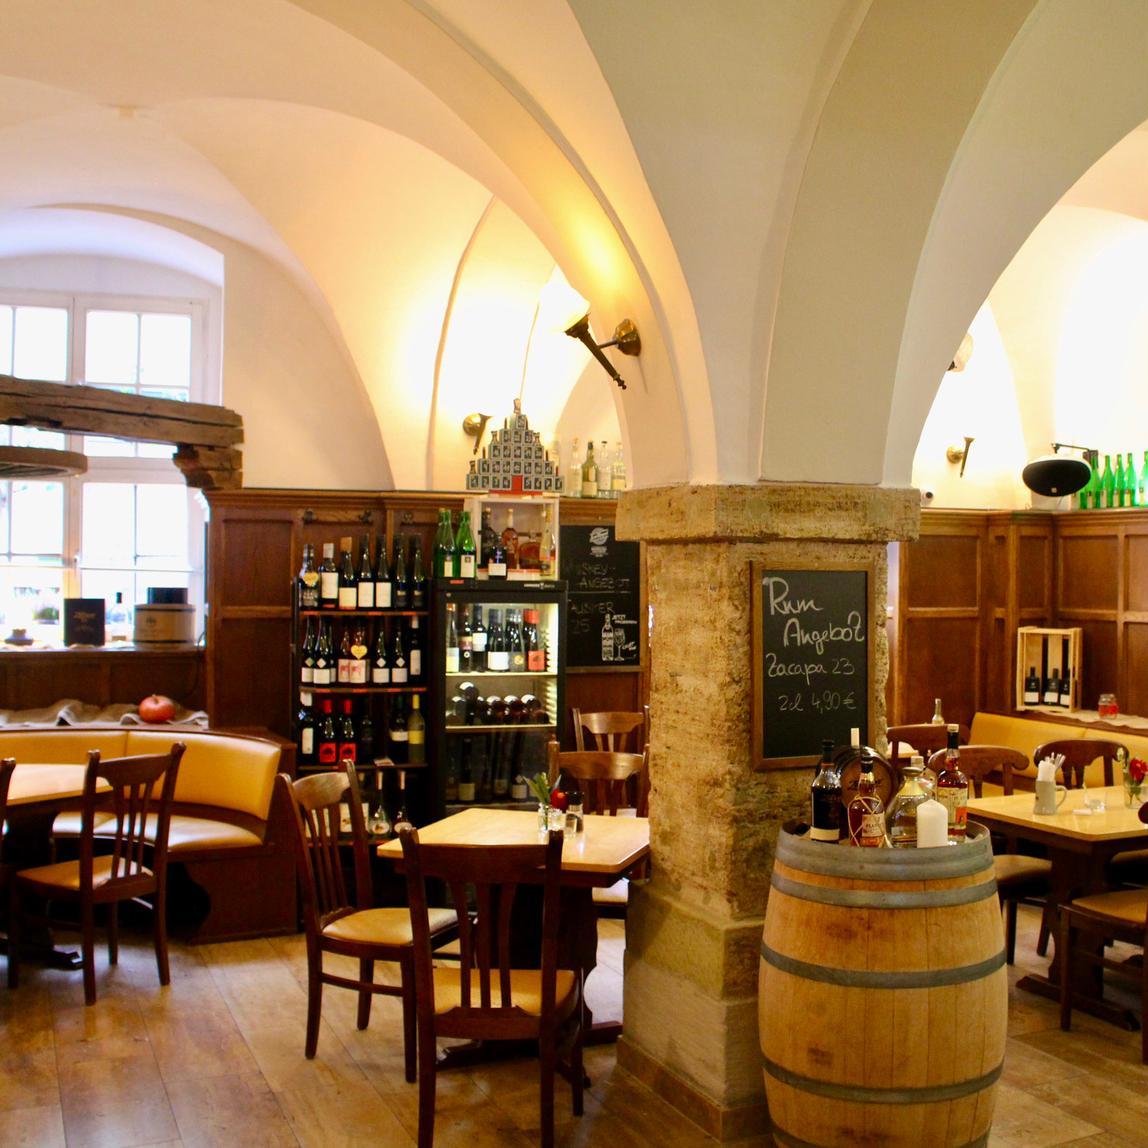 Restaurant "Ratswaage  - Bier- & Weinkeller" in Bad Langensalza